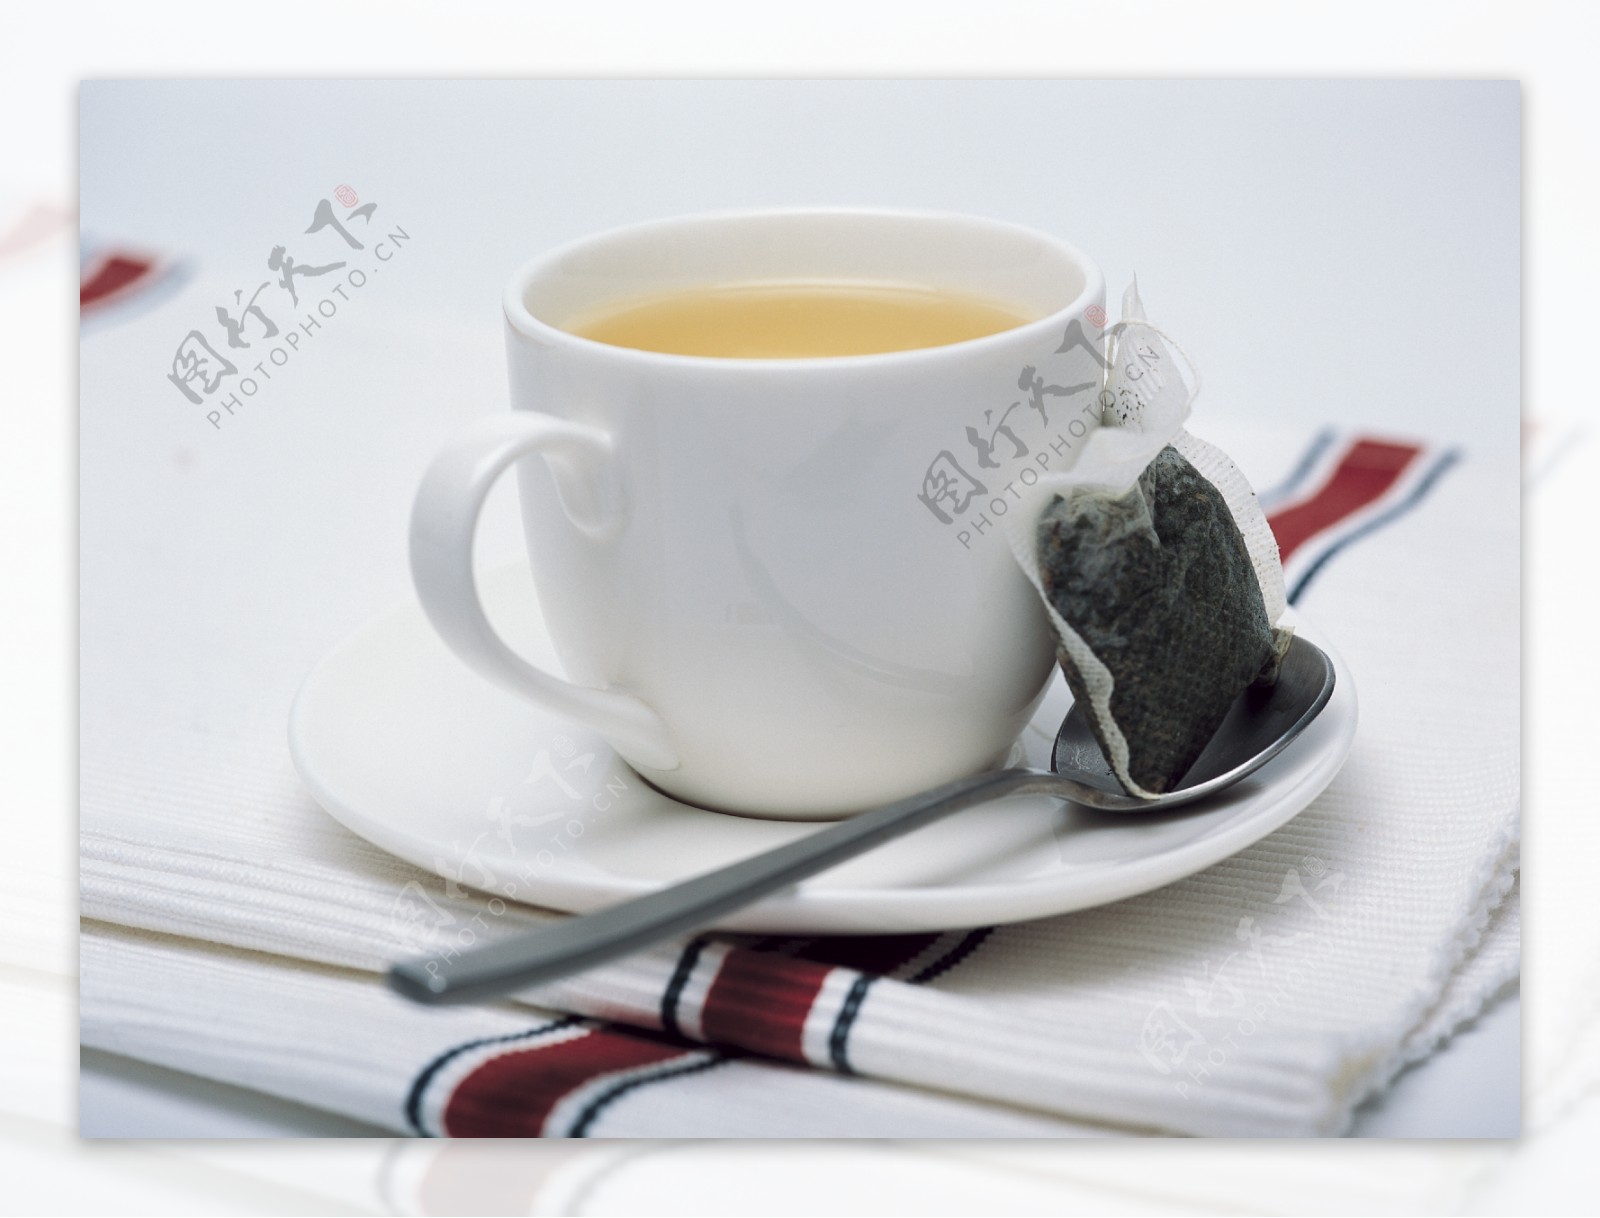 茶之巾图片